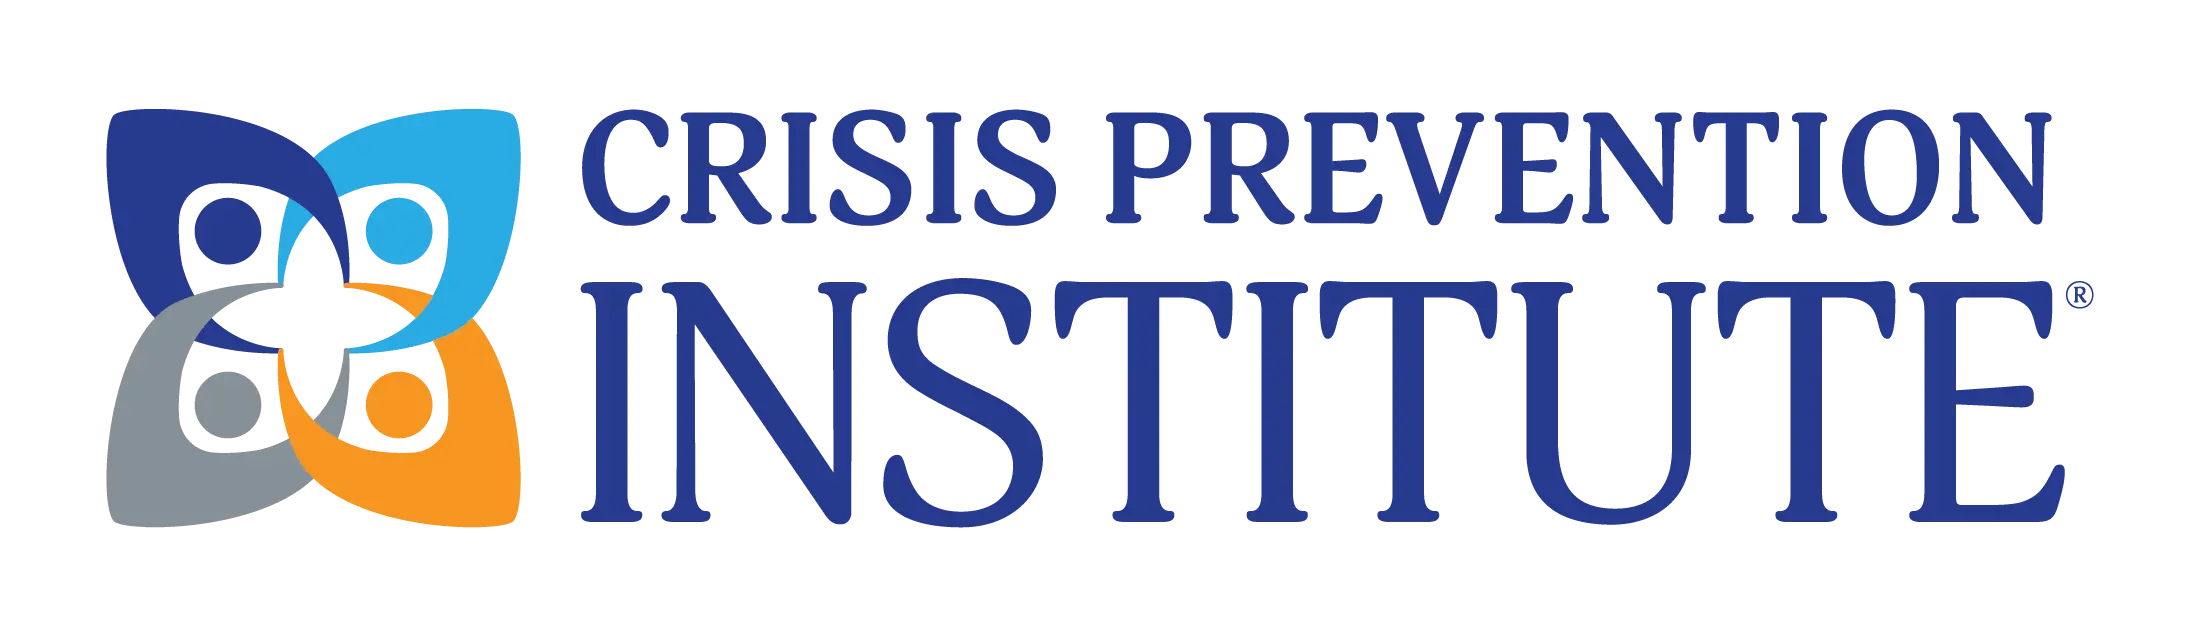 Crisis Prevention Institute logo.